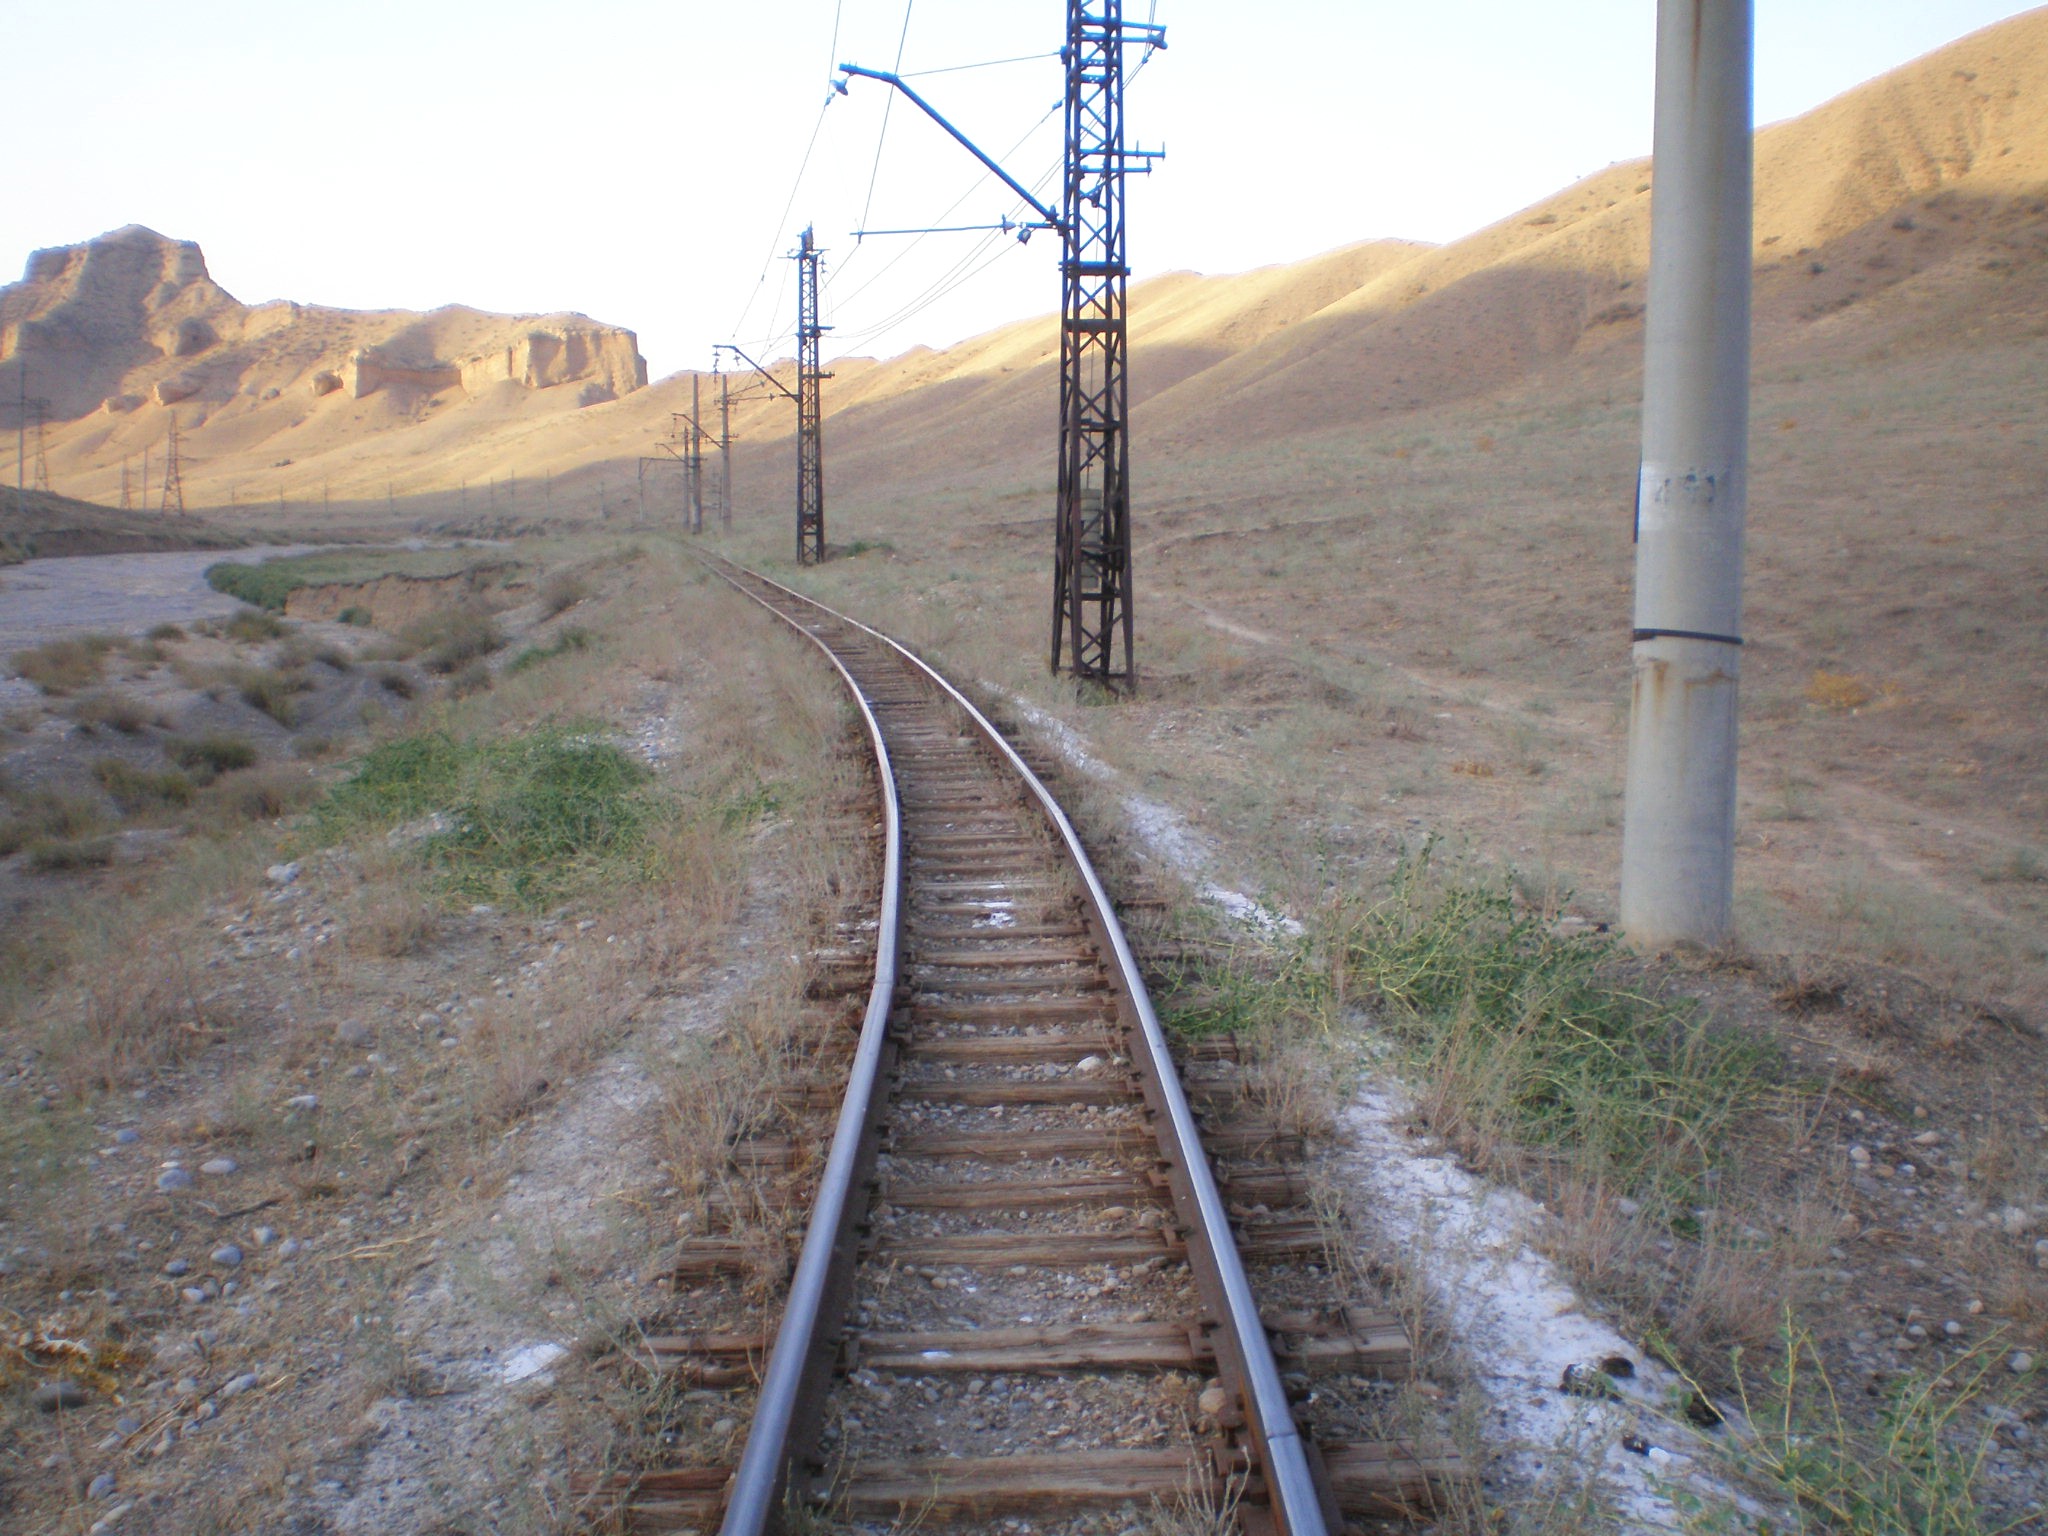 Сулюктинская узкоколейная железная дорога  —  фотографии, сделанные в 2008 году (часть 28)